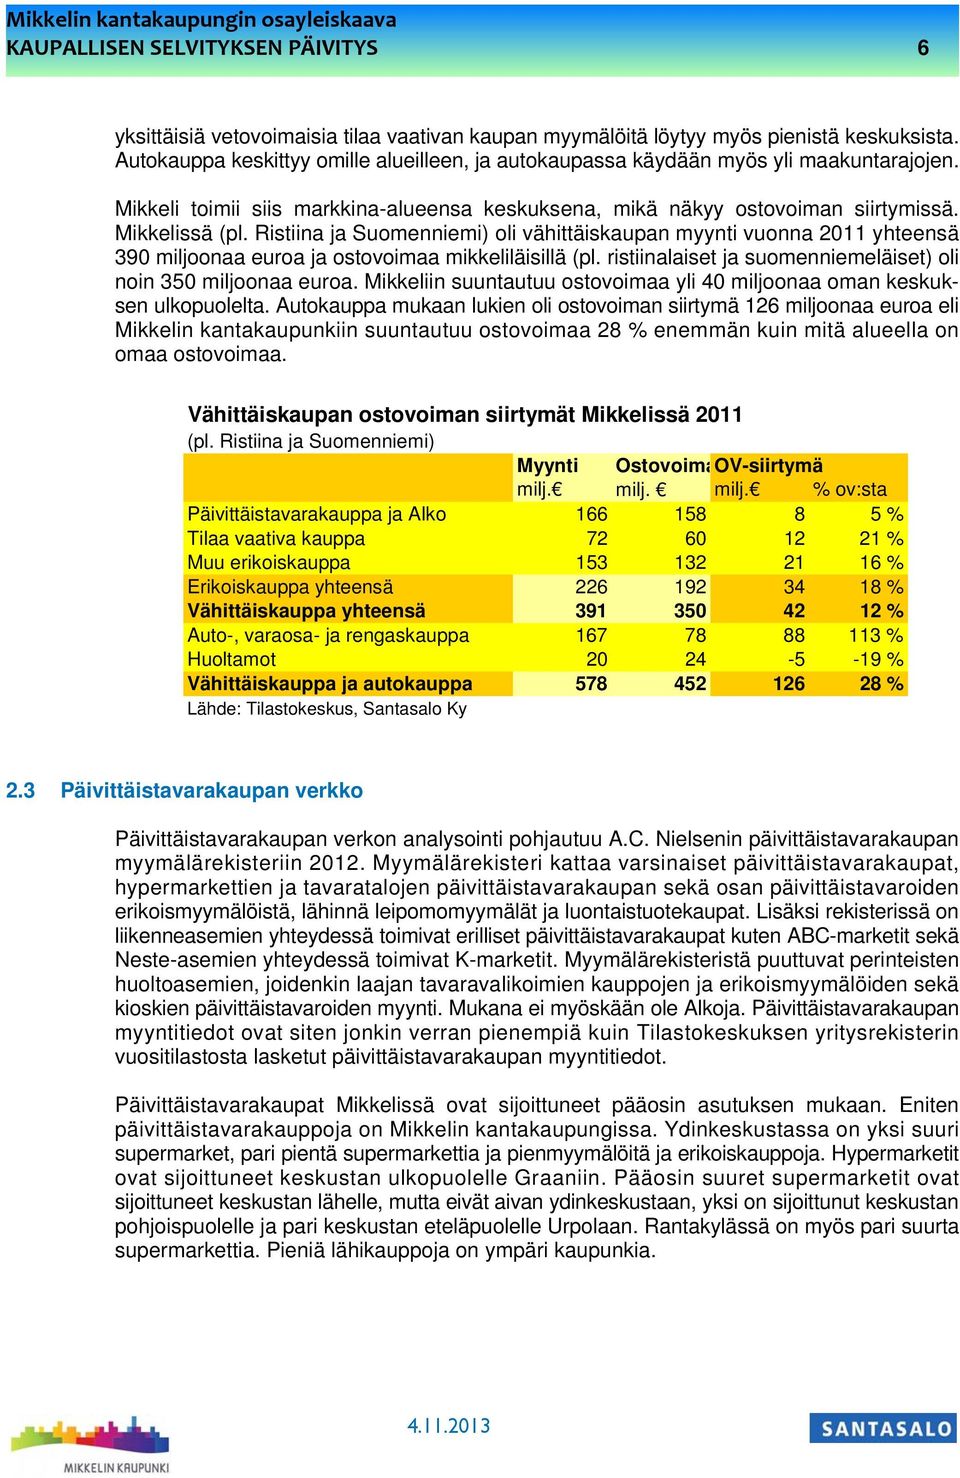 Ristiina ja Suomenniemi) oli vähittäiskaupan myynti vuonna 2011 yhteensä 390 miljoonaa euroa ja ostovoimaa mikkeliläisillä (pl. ristiinalaiset ja suomenniemeläiset) oli noin 350 miljoonaa euroa.